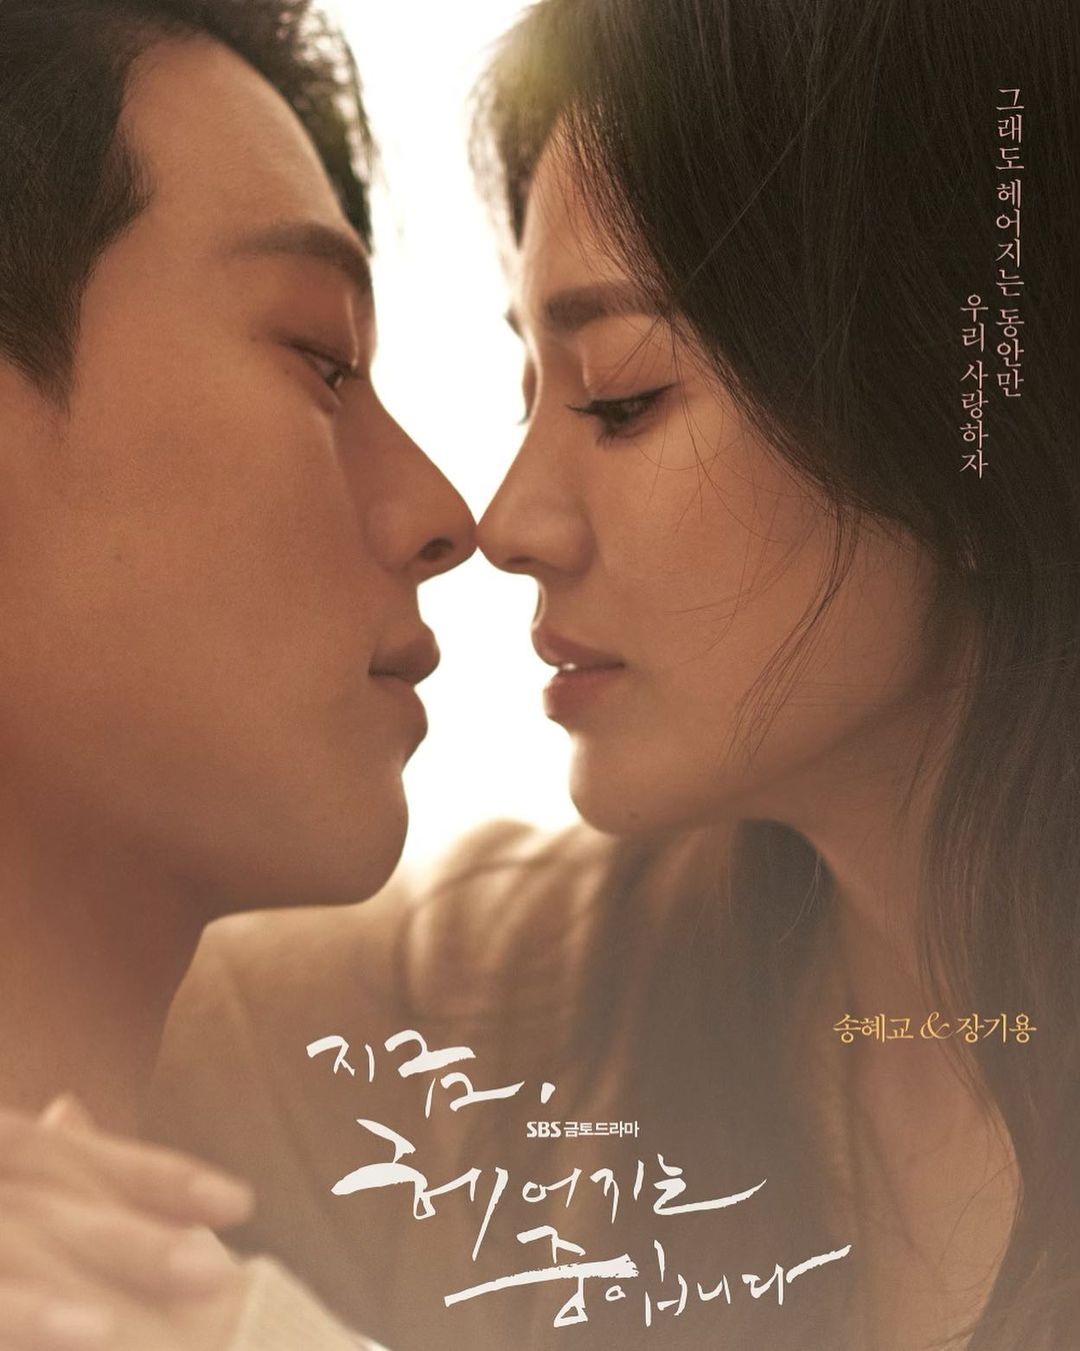 Sau bức ảnh tình tứ bão mạng, Song Hye Kyo tung loạt khoảnh khắc 'cưỡng hôn' tình trẻ - Ảnh 2